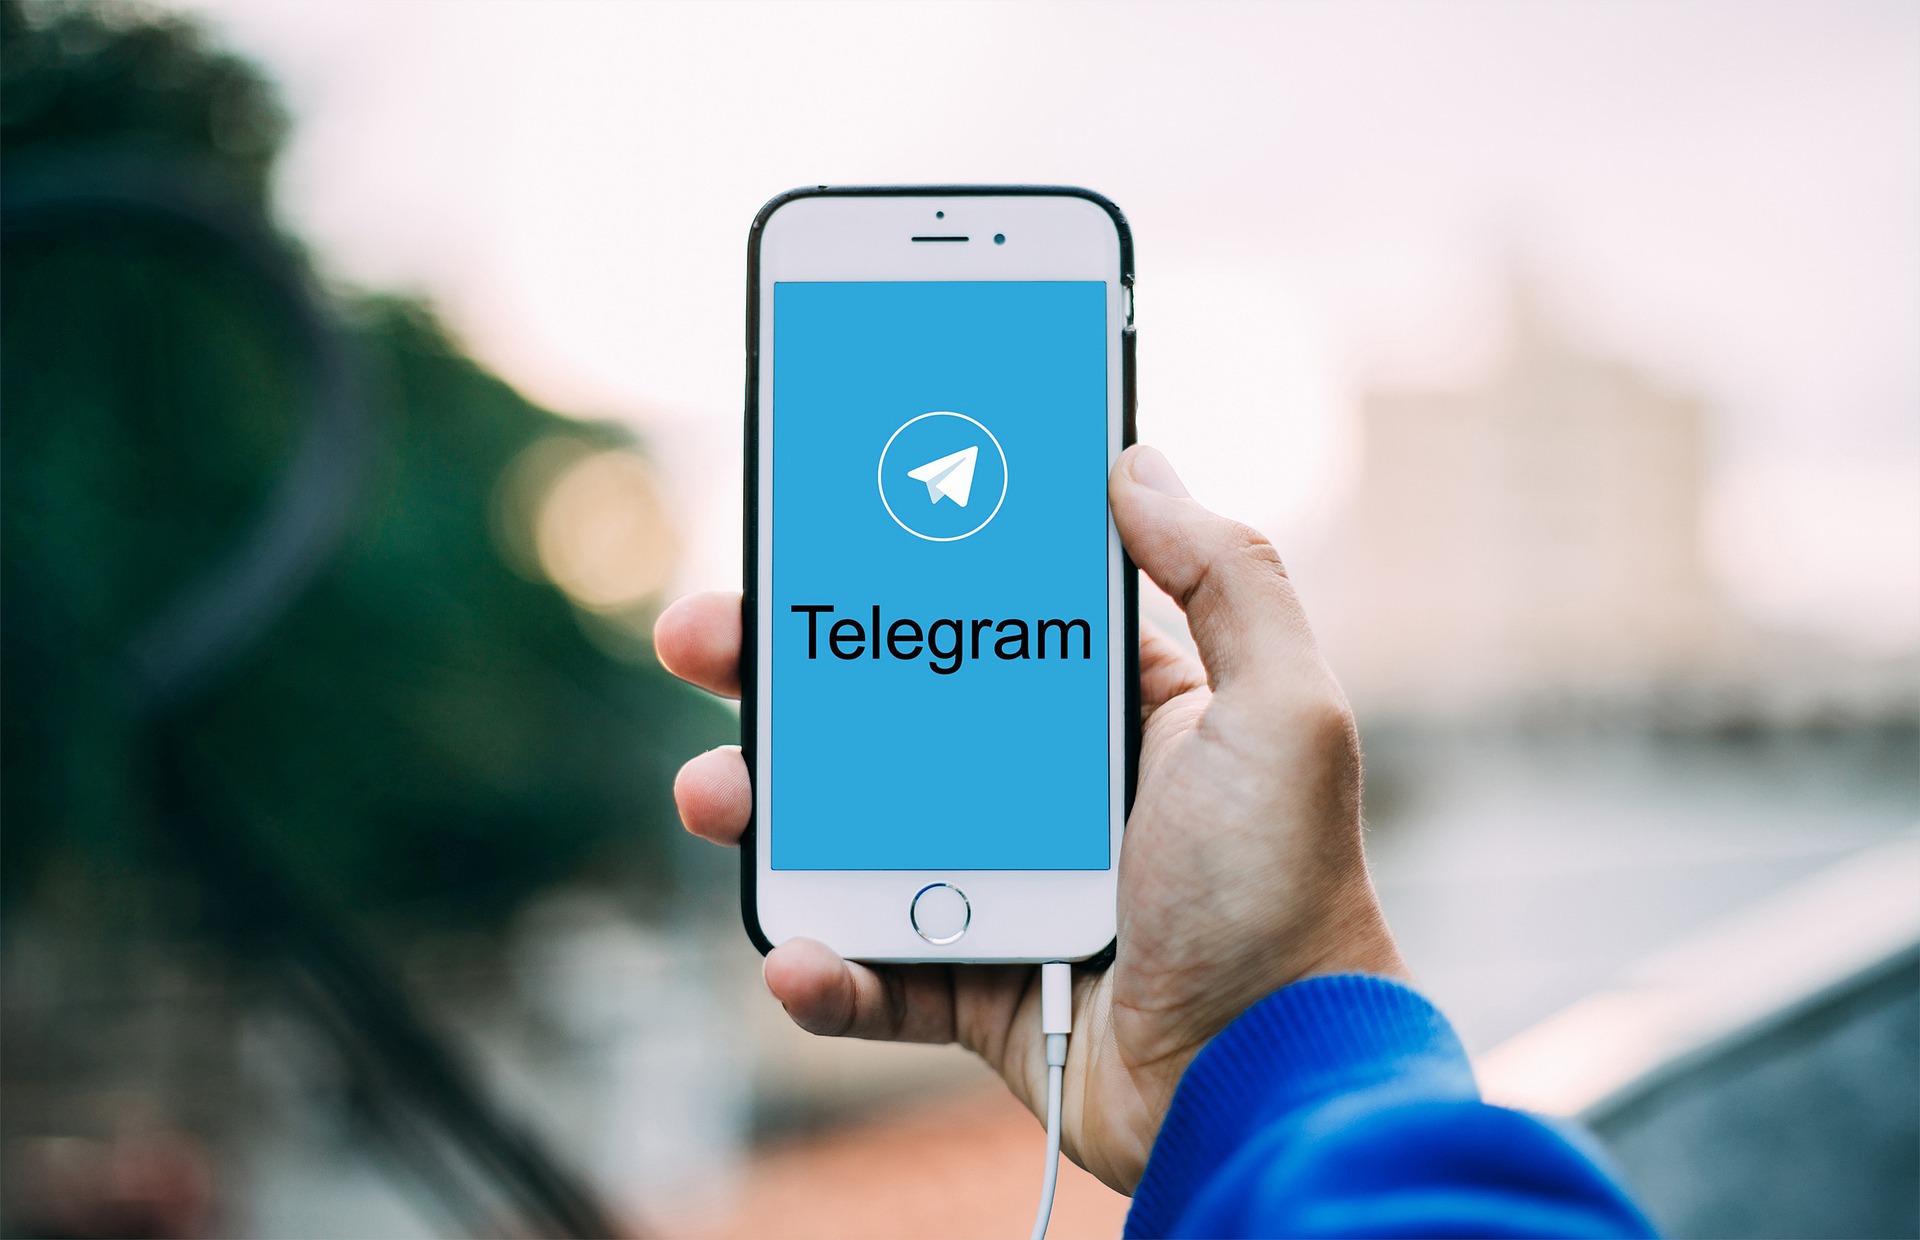 Concorrente do WhatsApp, o Telegram já está presente em 60% dos celulares brasileiros, segundo estudo.